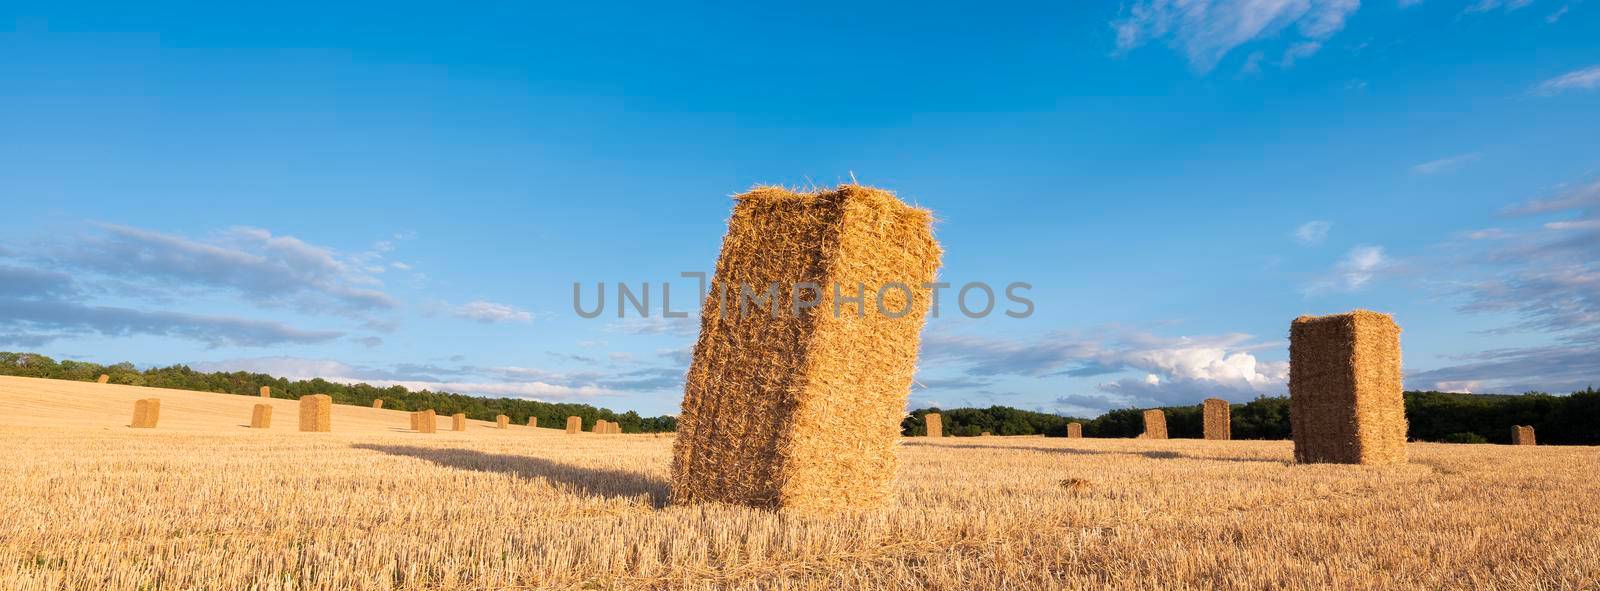 standing straw bales in field under blue sky by ahavelaar